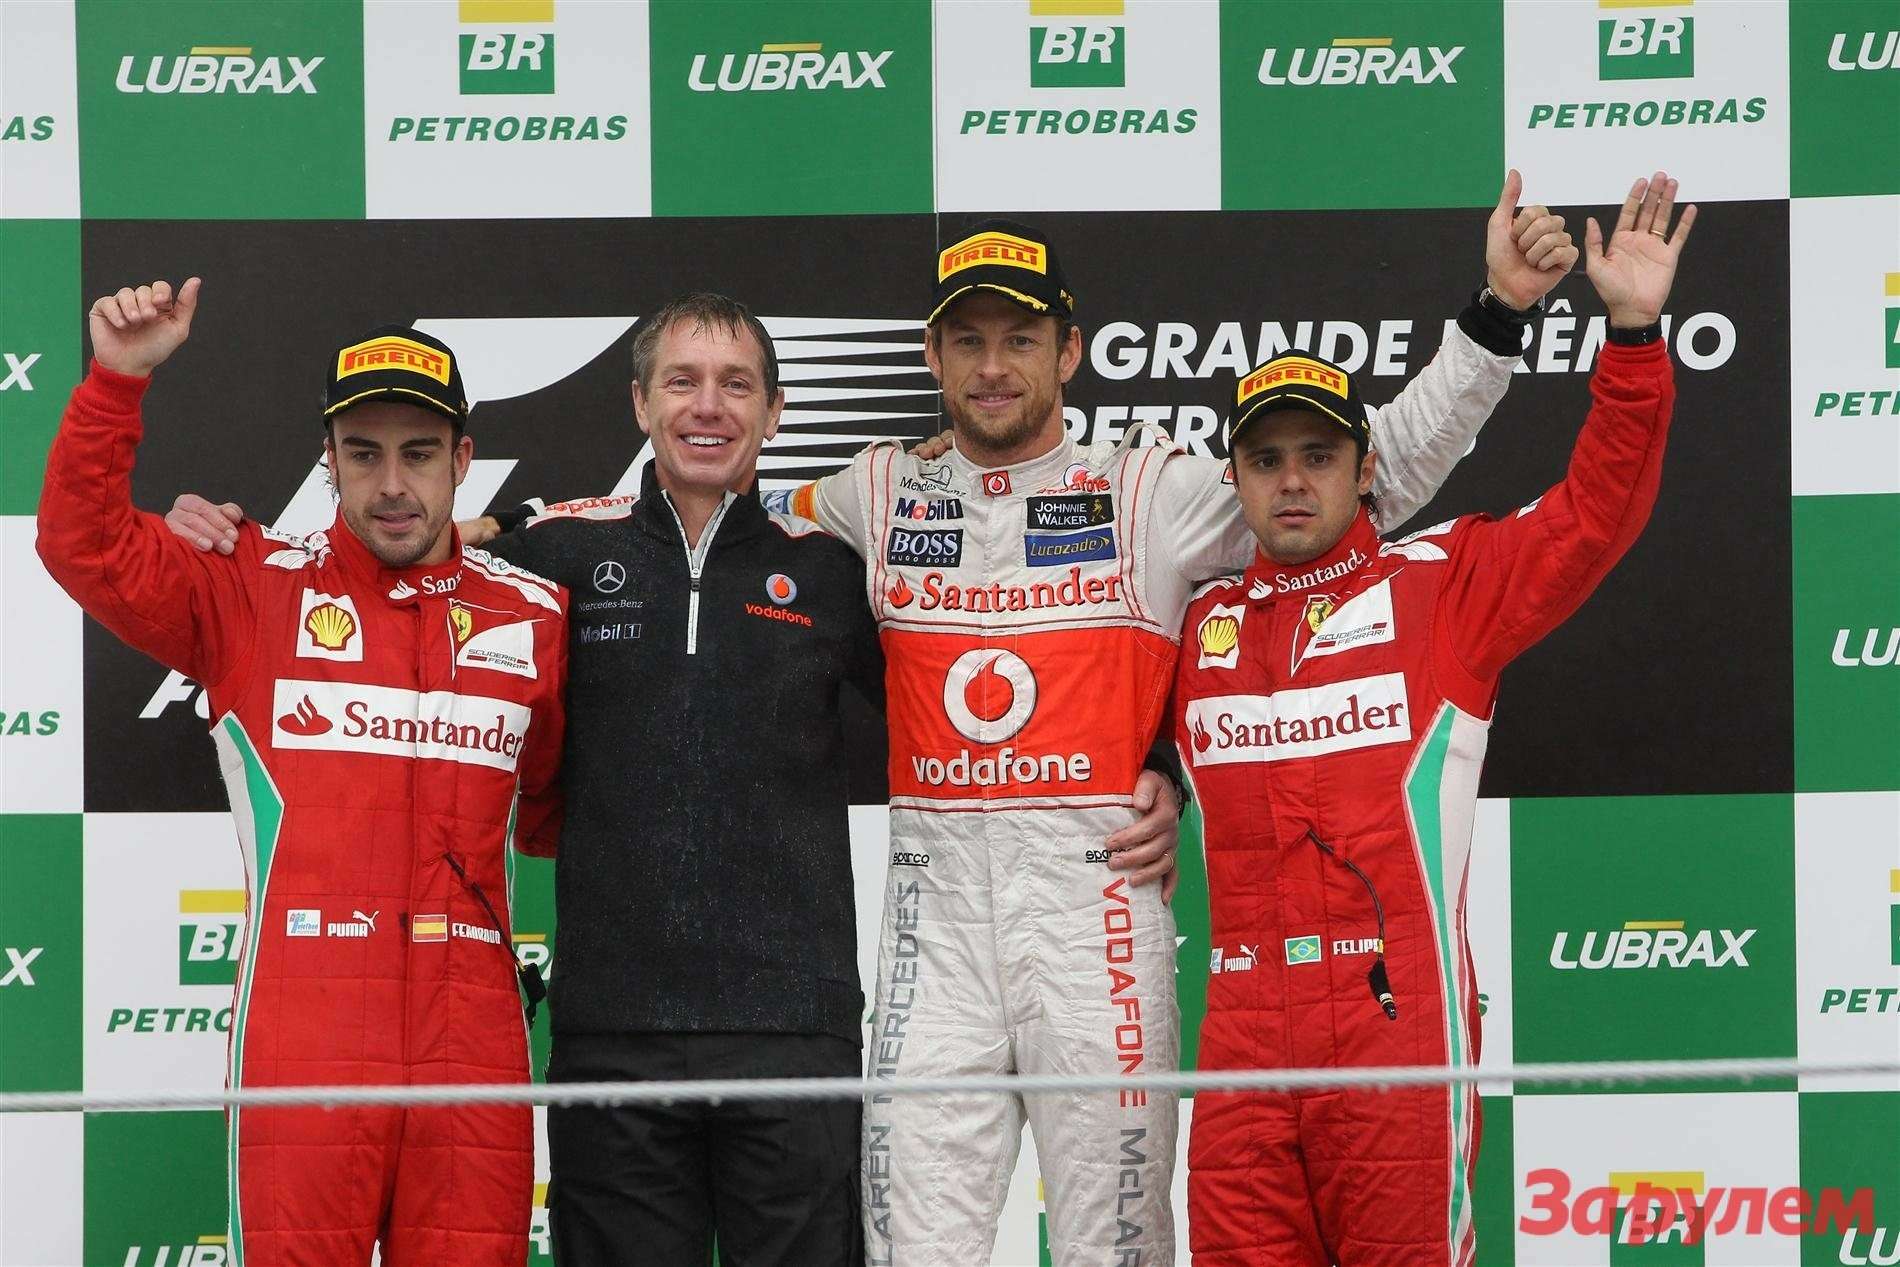 Дженсон Баттон в этом сезоне стал победителем первой и последней гонки сезона - Гран При Австралии и Гран При Бразилии.